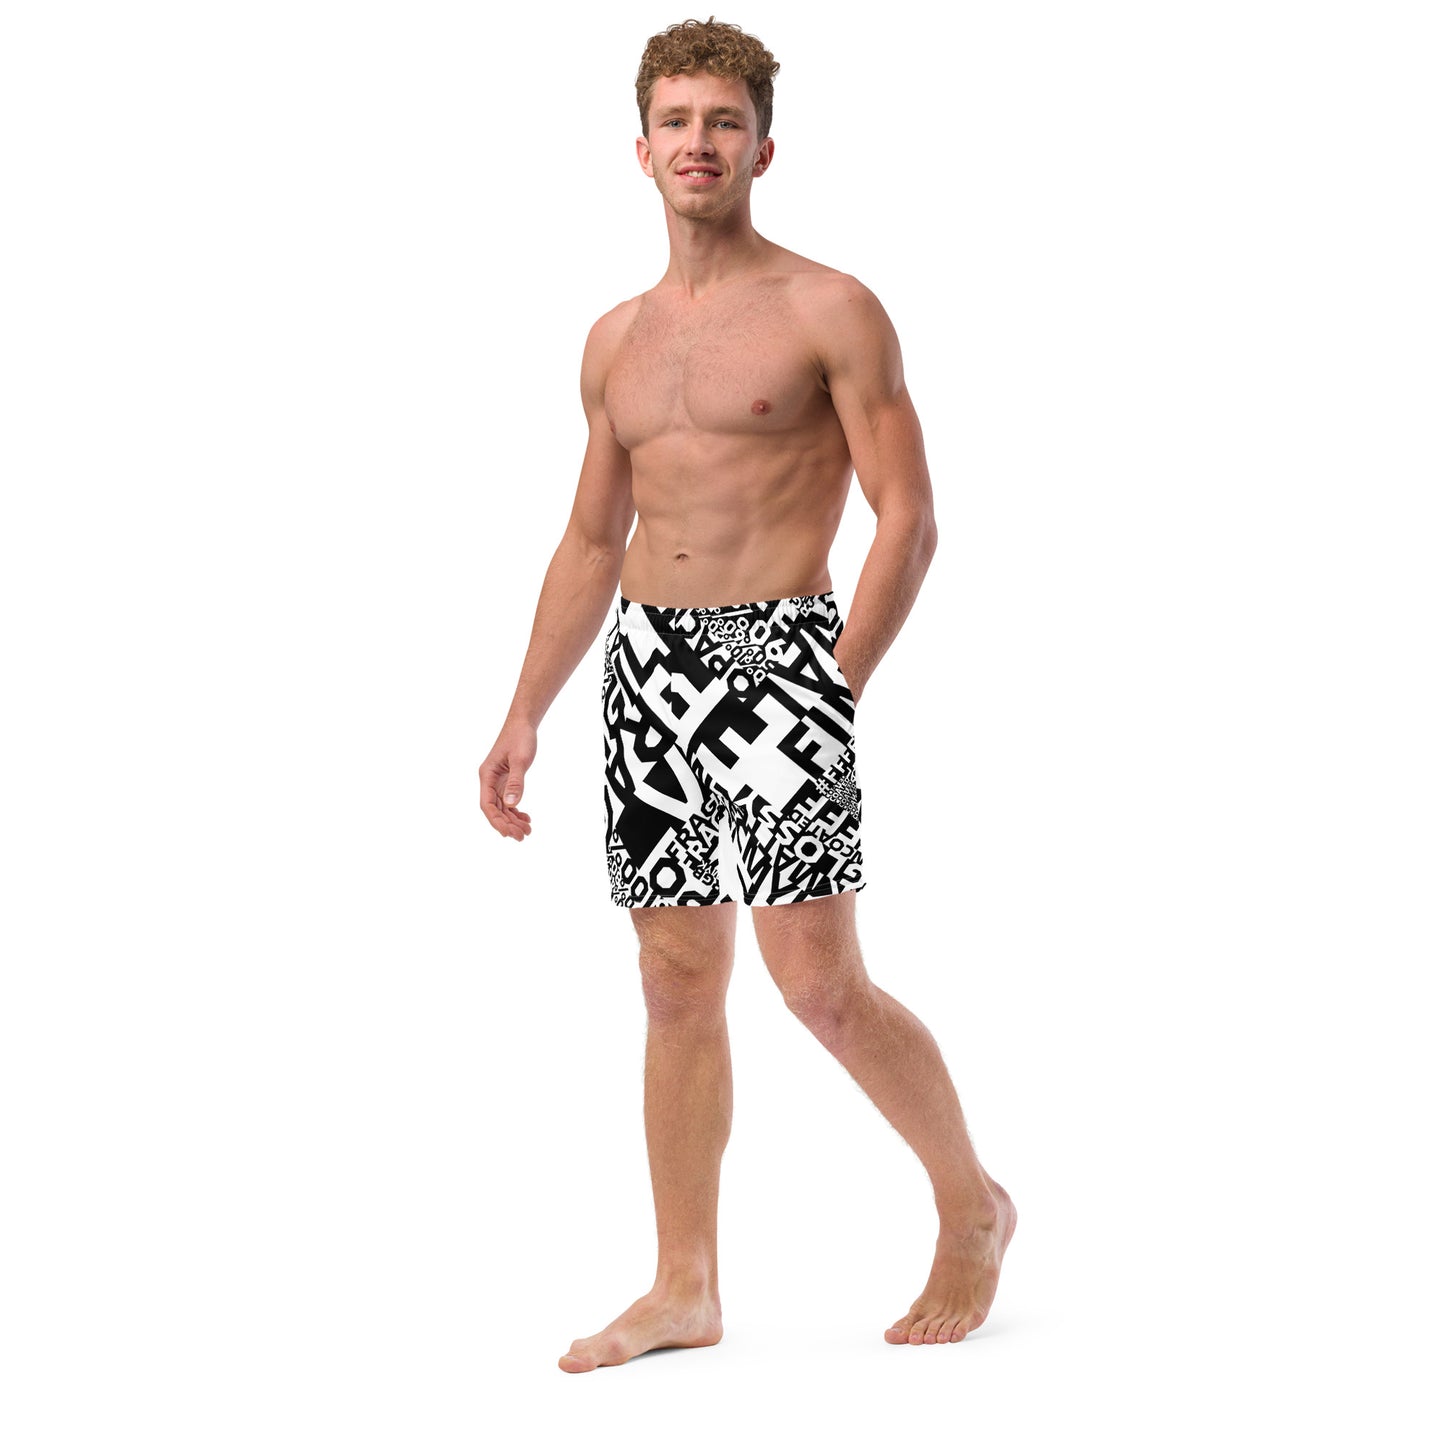 Dieline Signature Men's swim trunks